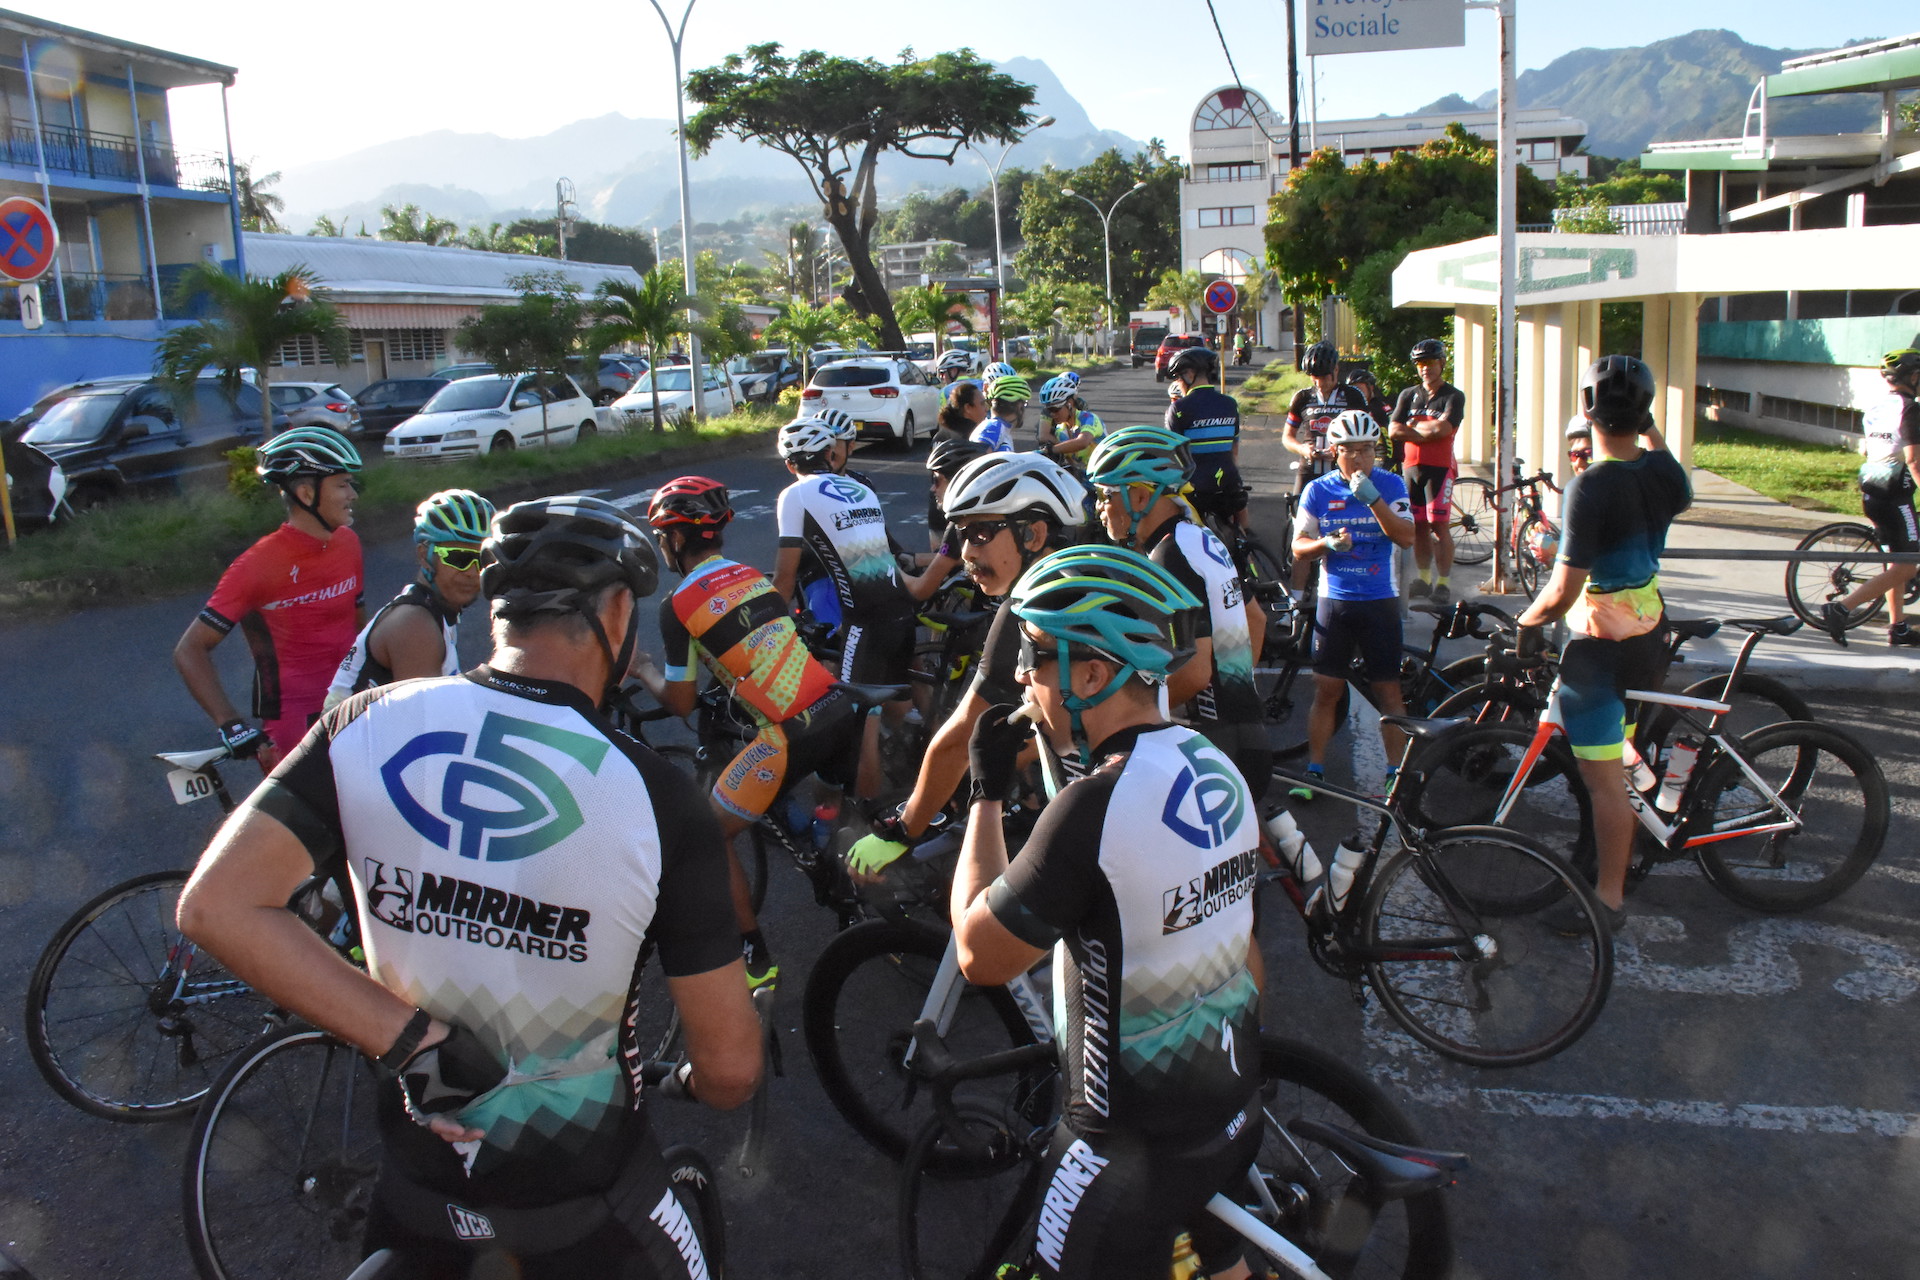 30 autres coureurs ont rejoint les 13 premiers cyclistes pour les accompagner sur leur second tour de l'île.